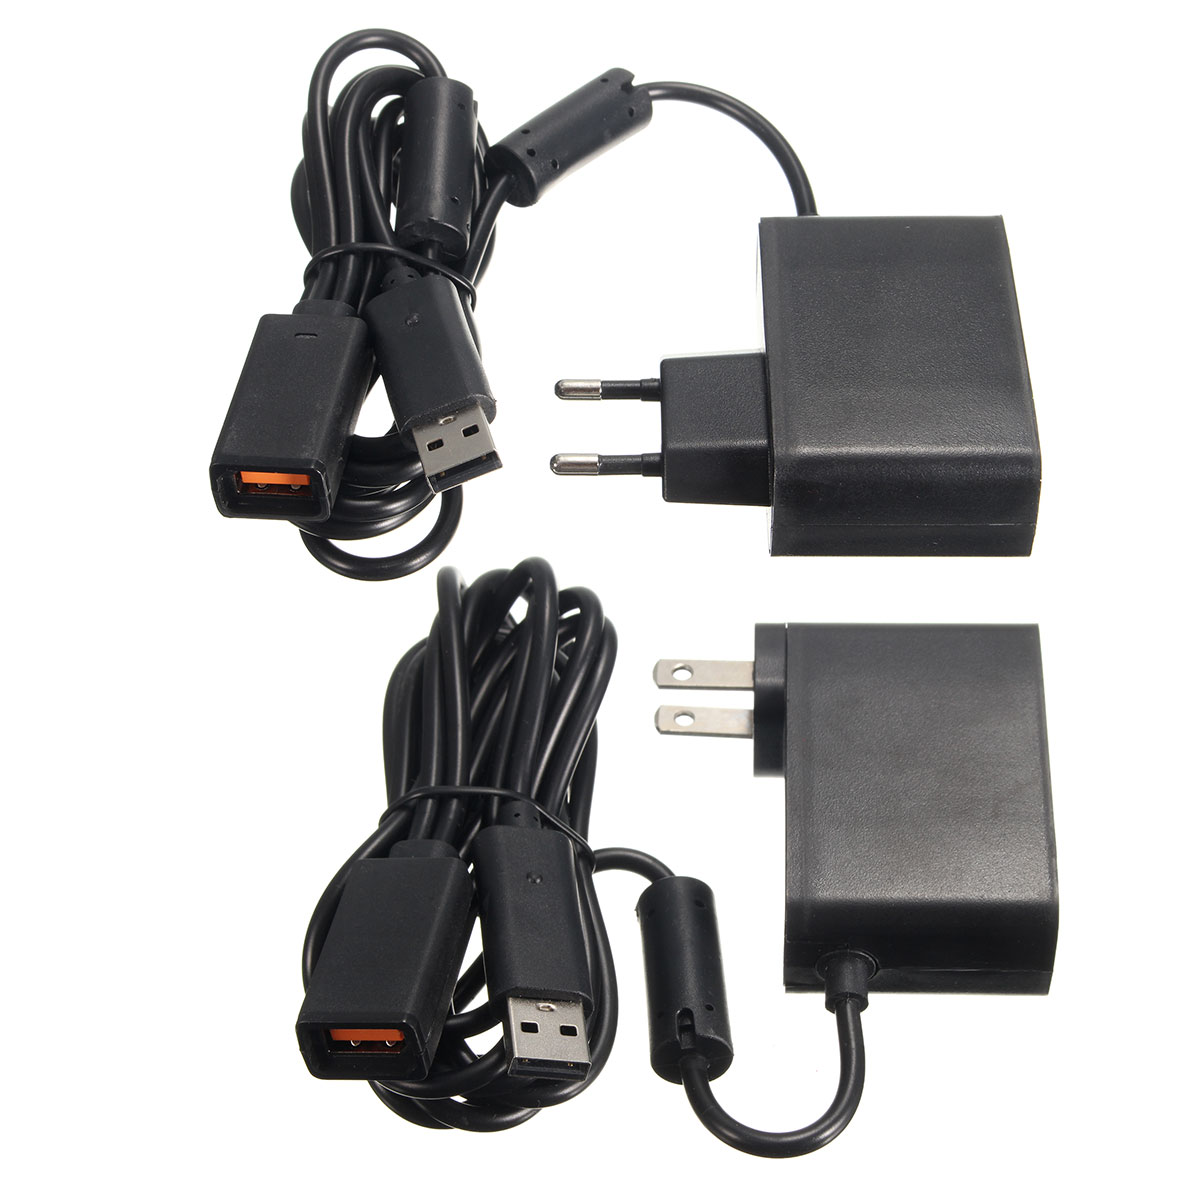 2.3m USB AC Adapter Power Supply Cable for Xbox 360 Kinect Sensor EU/US Plug 20